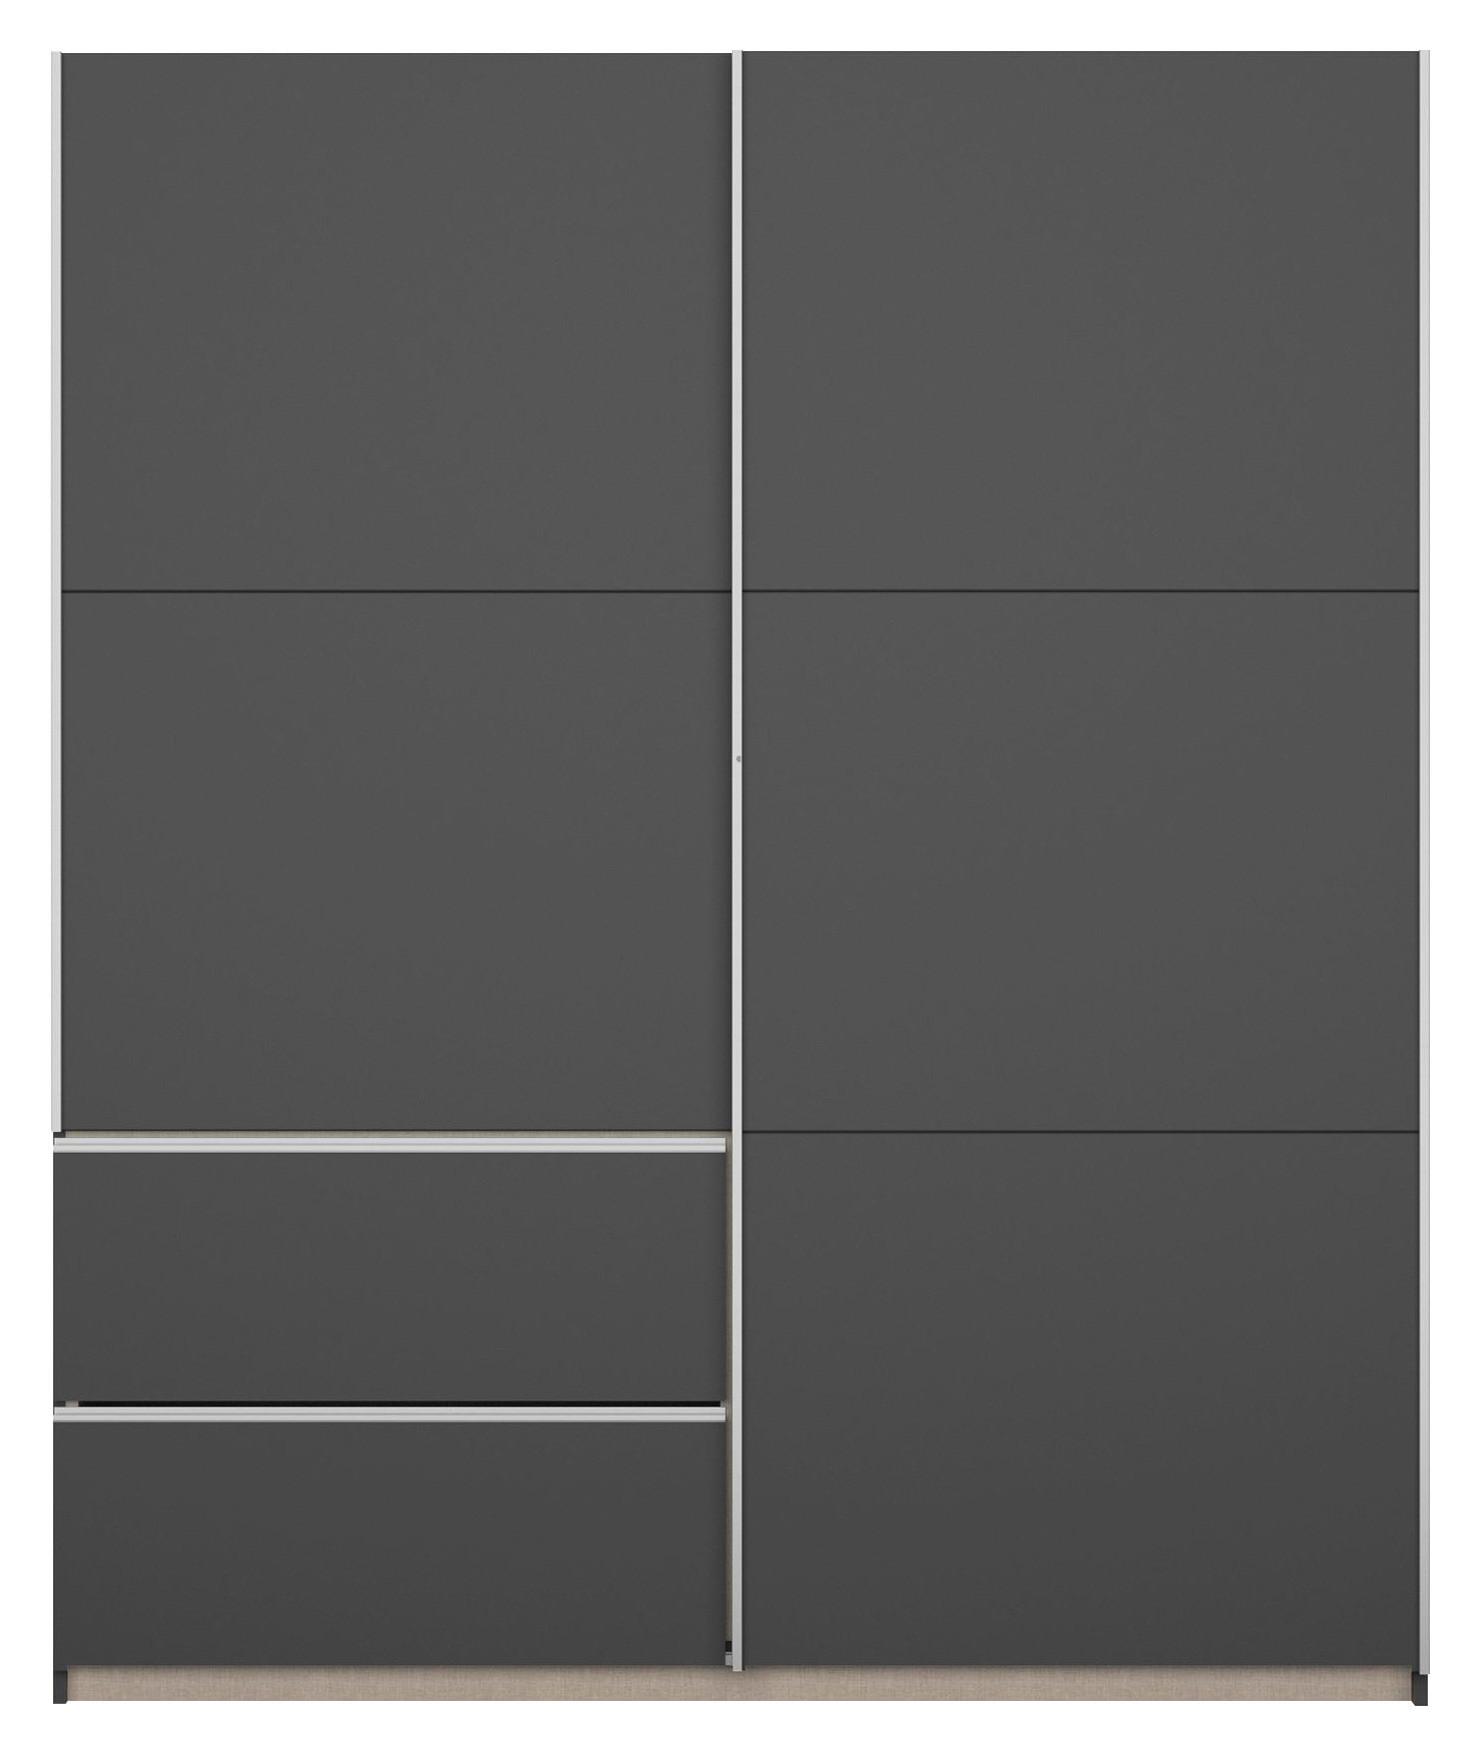 Šatní Skříň Sevilla, Šedá 175cm - šedá/barvy hliníku, Konvenční, kov/kompozitní dřevo (175/210/59cm) - Modern Living